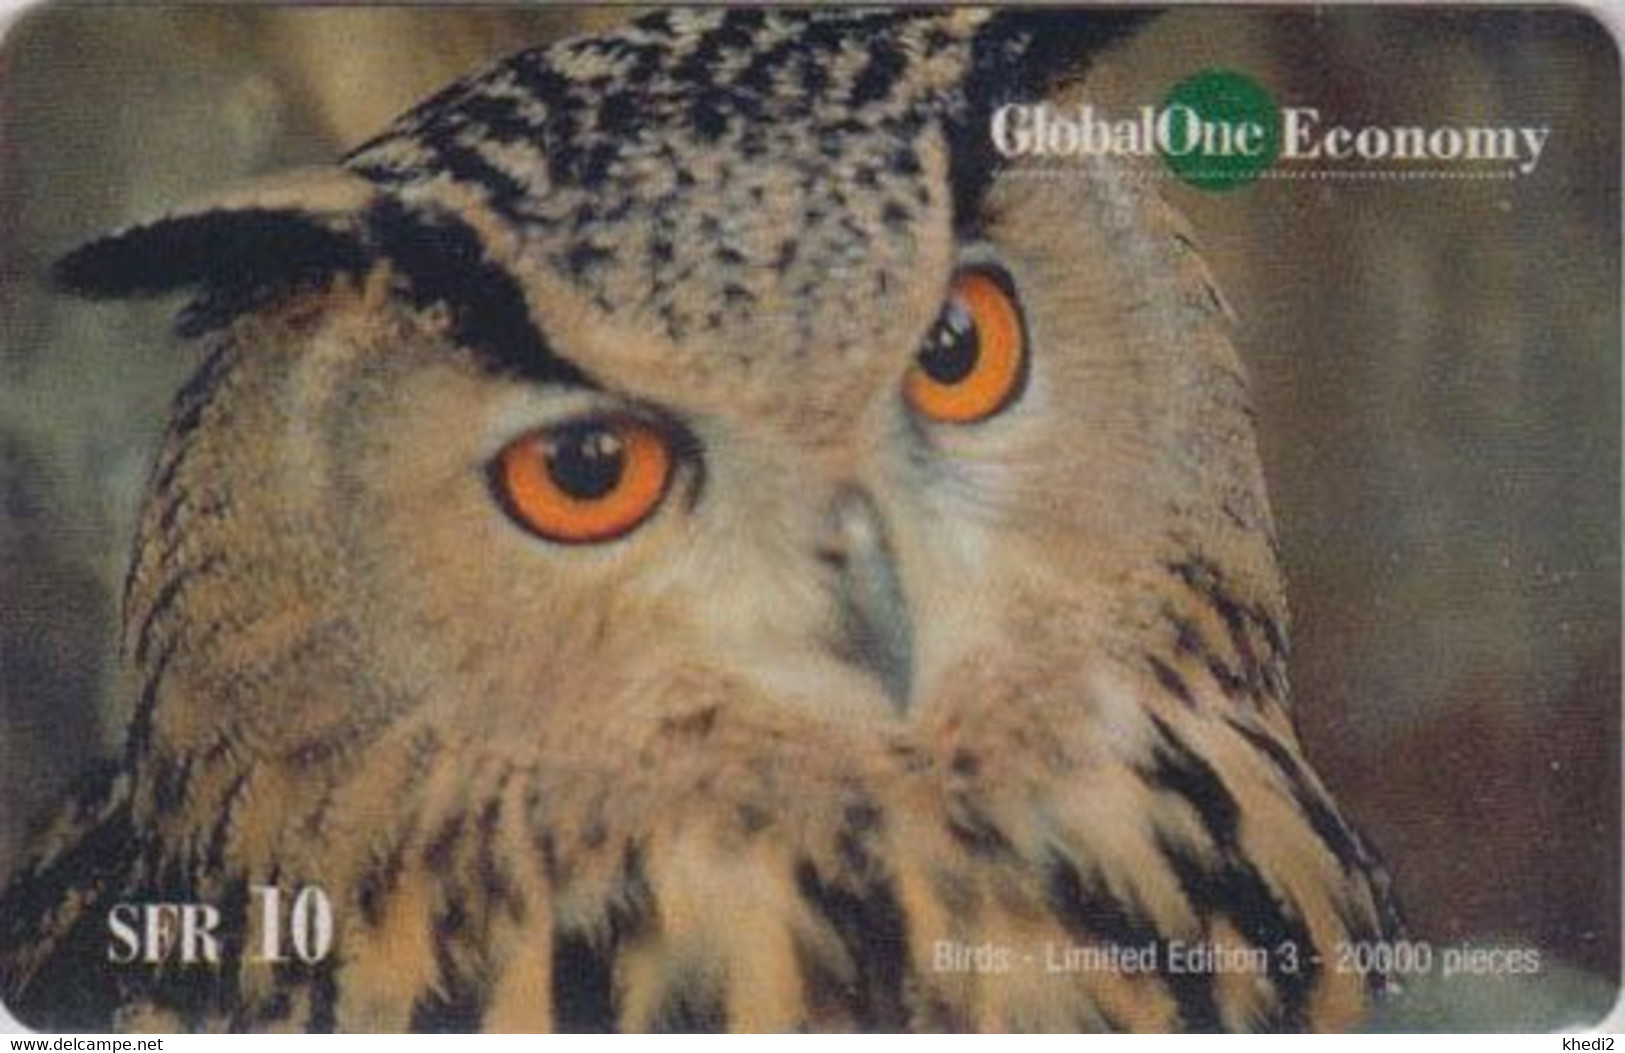 Télécarte Prépayée SUISSE GLOBAL ONE - ANIMAL - OISEAU - HIBOU - OWL BIRD - Switzerland Prepaid Phonecard - 5149 - Hiboux & Chouettes